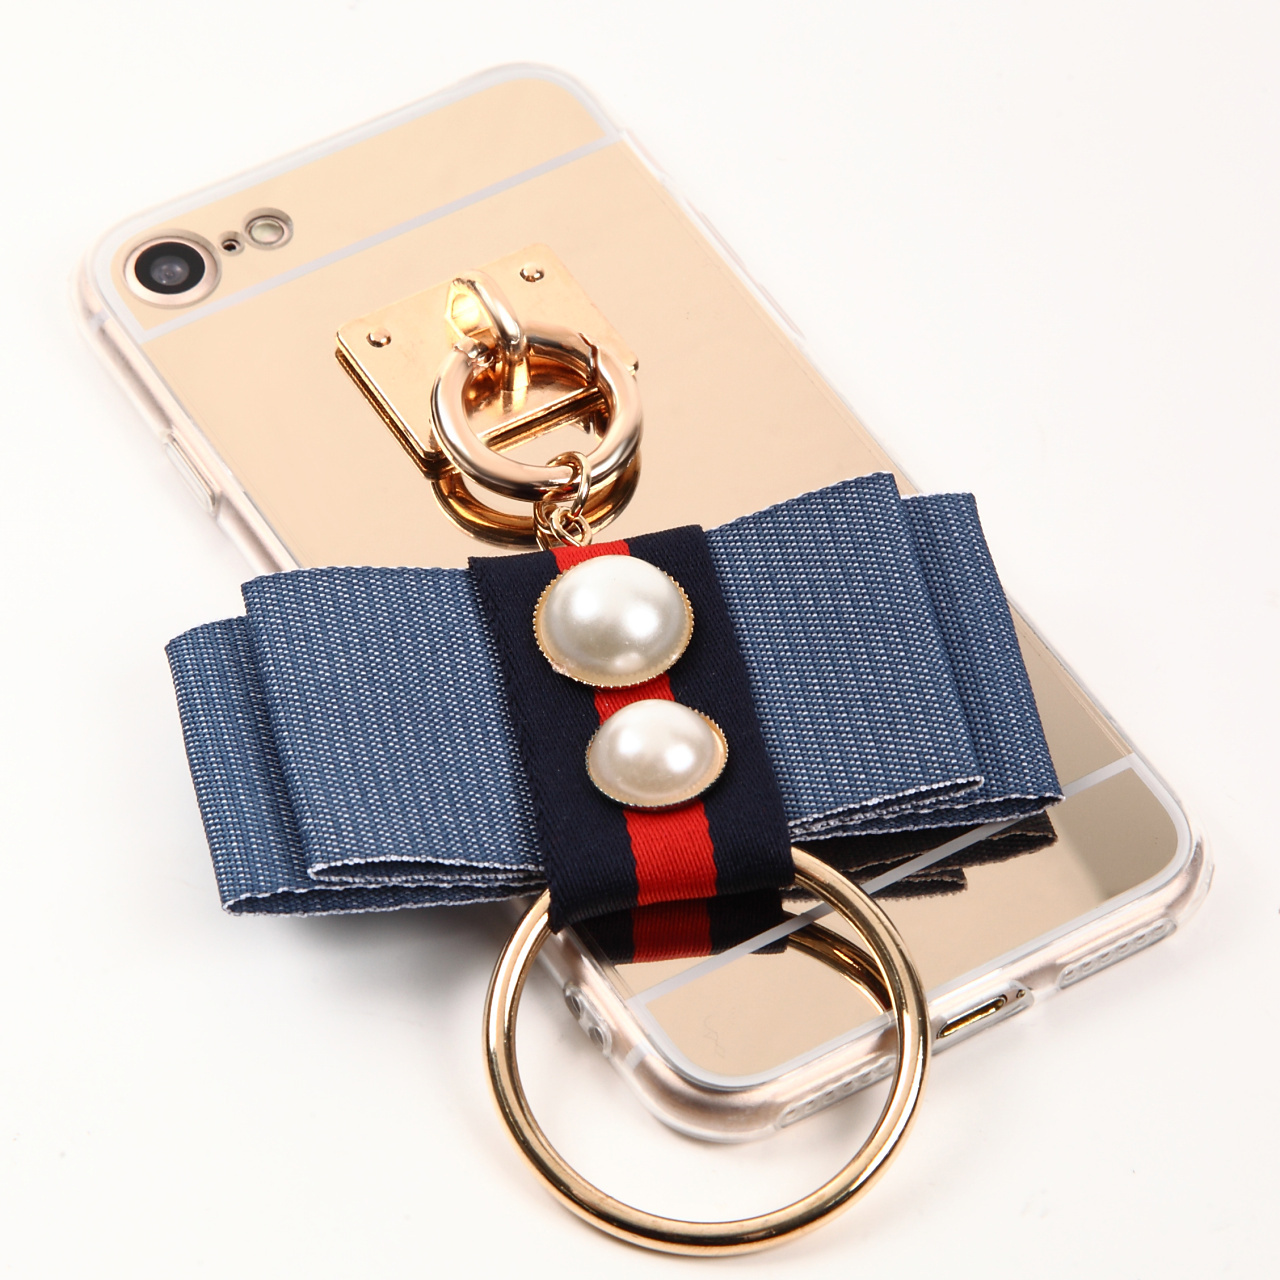 デニム風リボンとリングのチャーム付 iPhoneケース♪